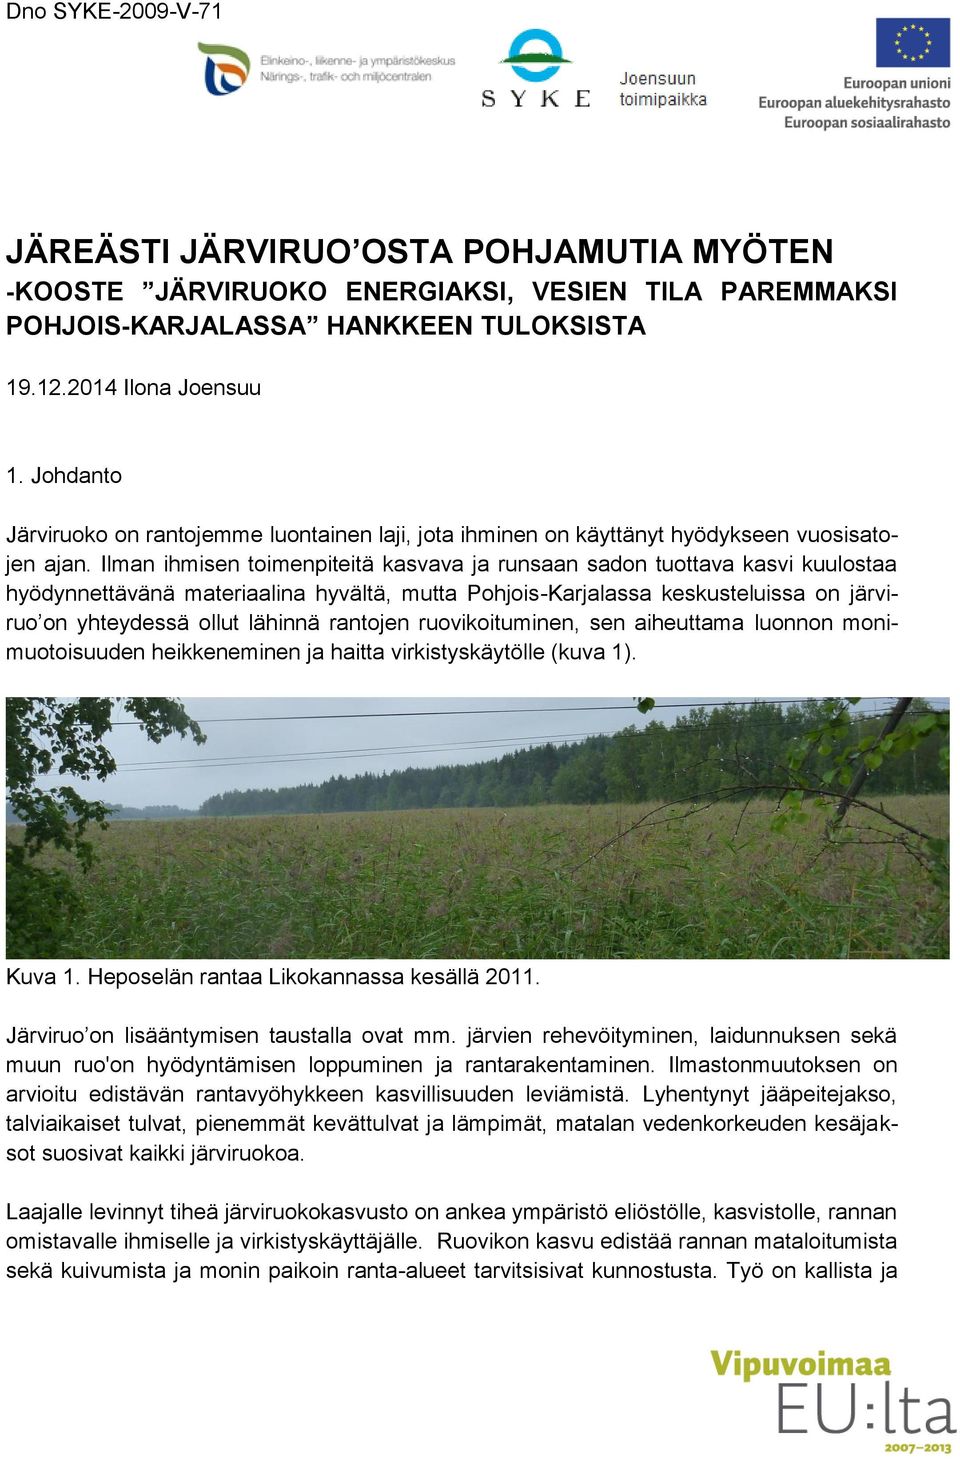 Ilman ihmisen toimenpiteitä kasvava ja runsaan sadon tuottava kasvi kuulostaa hyödynnettävänä materiaalina hyvältä, mutta Pohjois-Karjalassa keskusteluissa on järviruo on yhteydessä ollut lähinnä